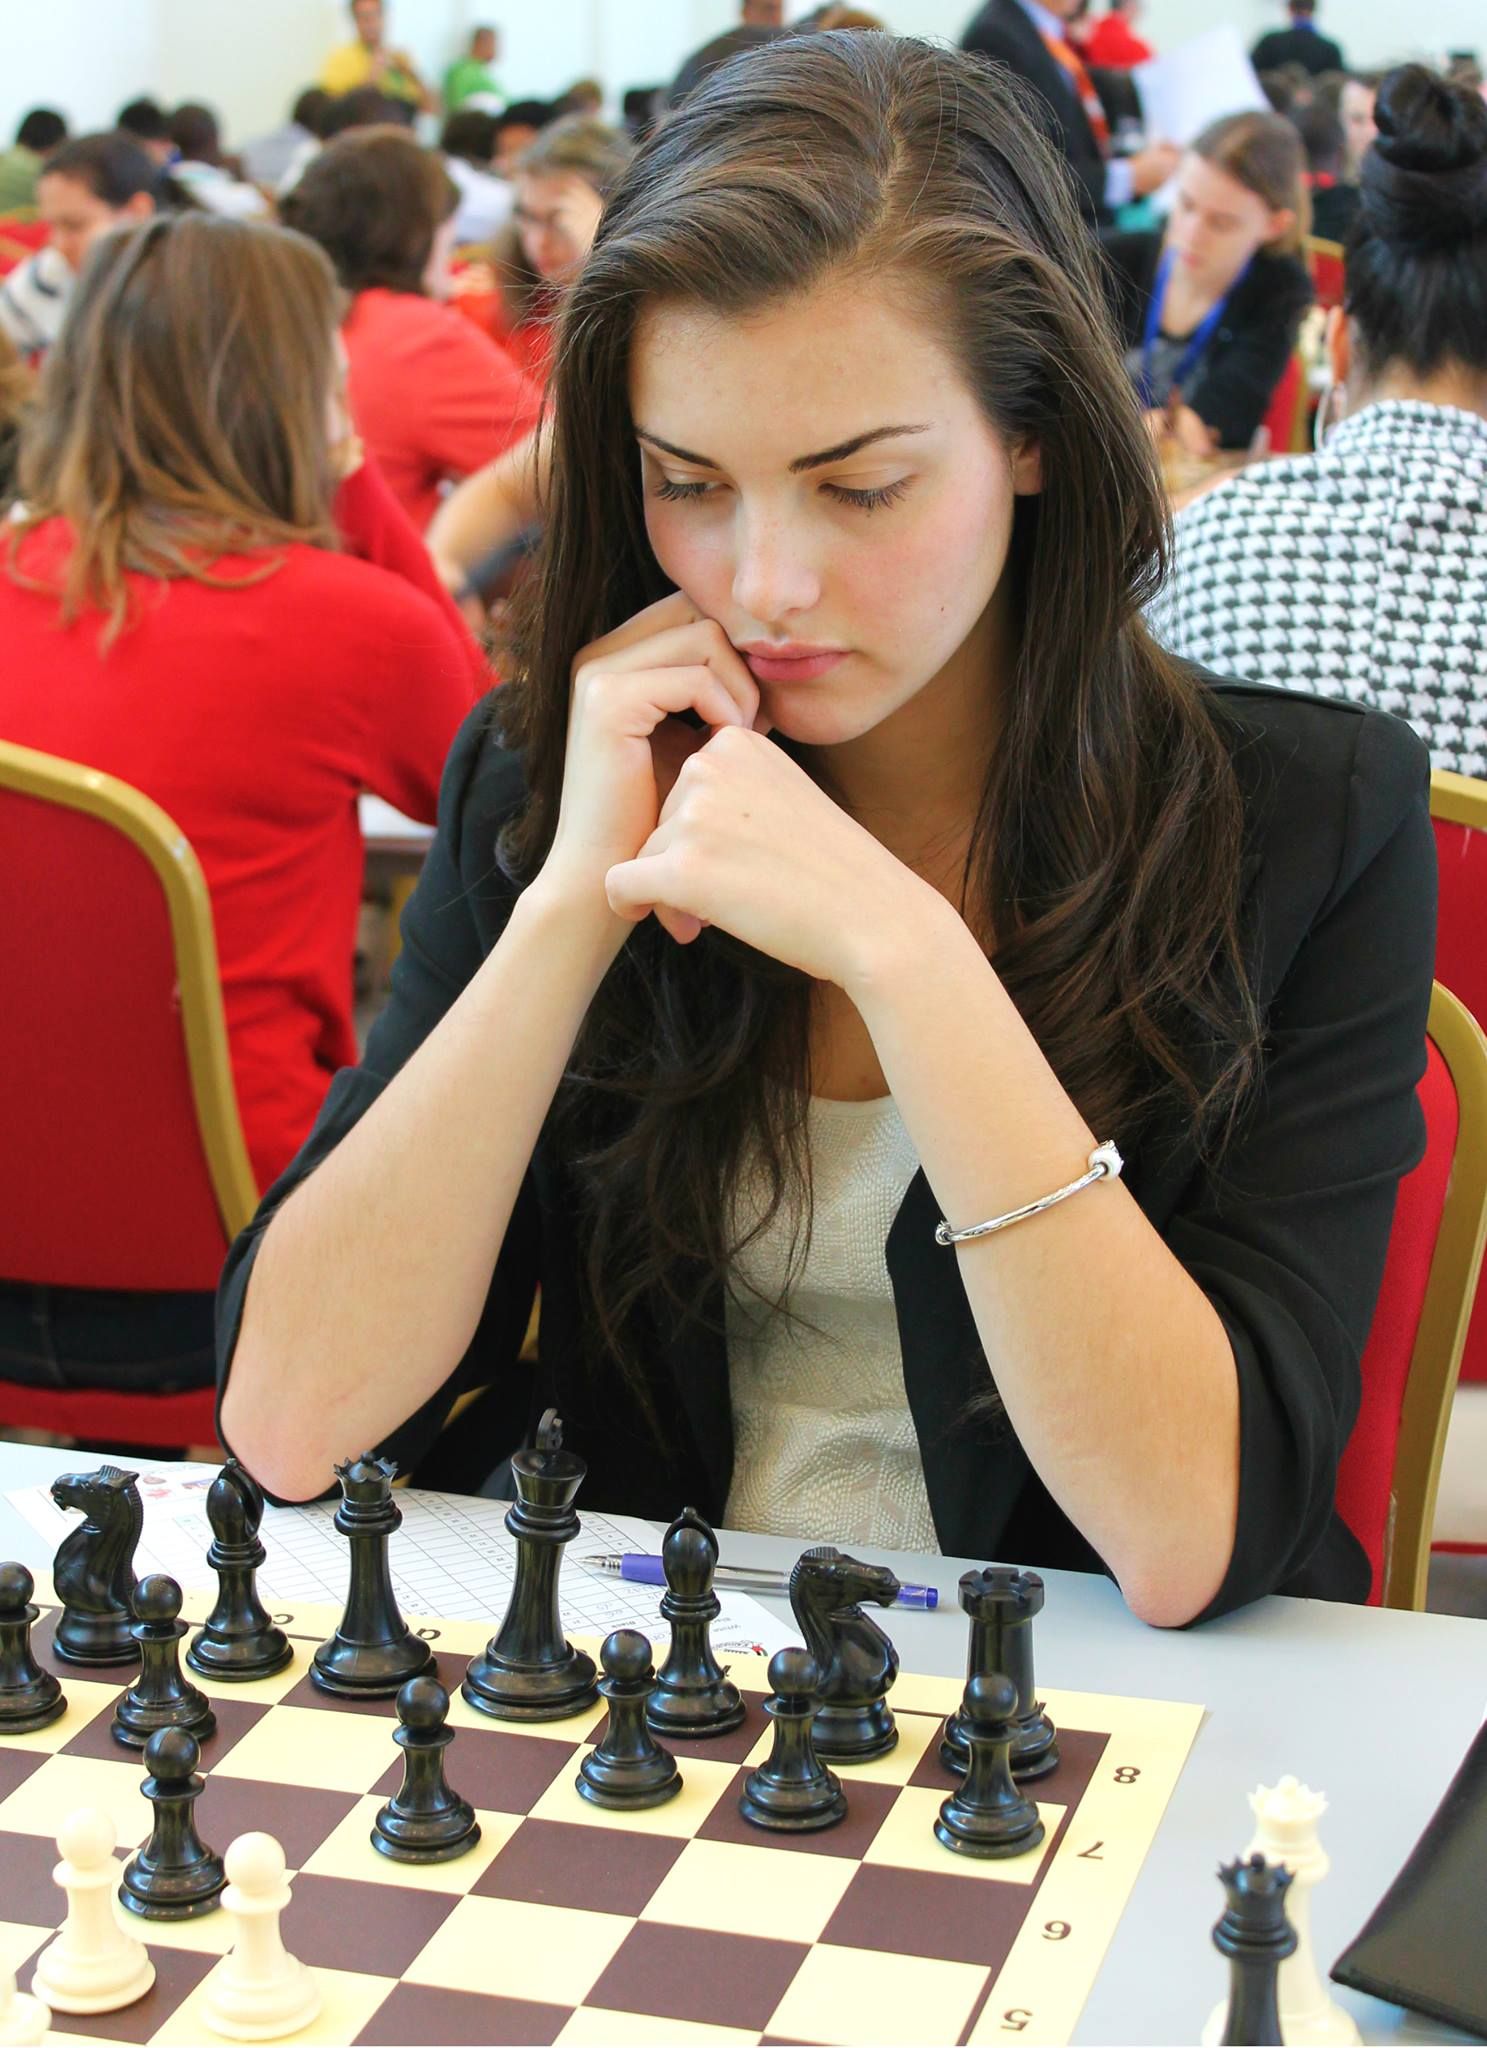 チェス女性棋士 Alexandra Botez